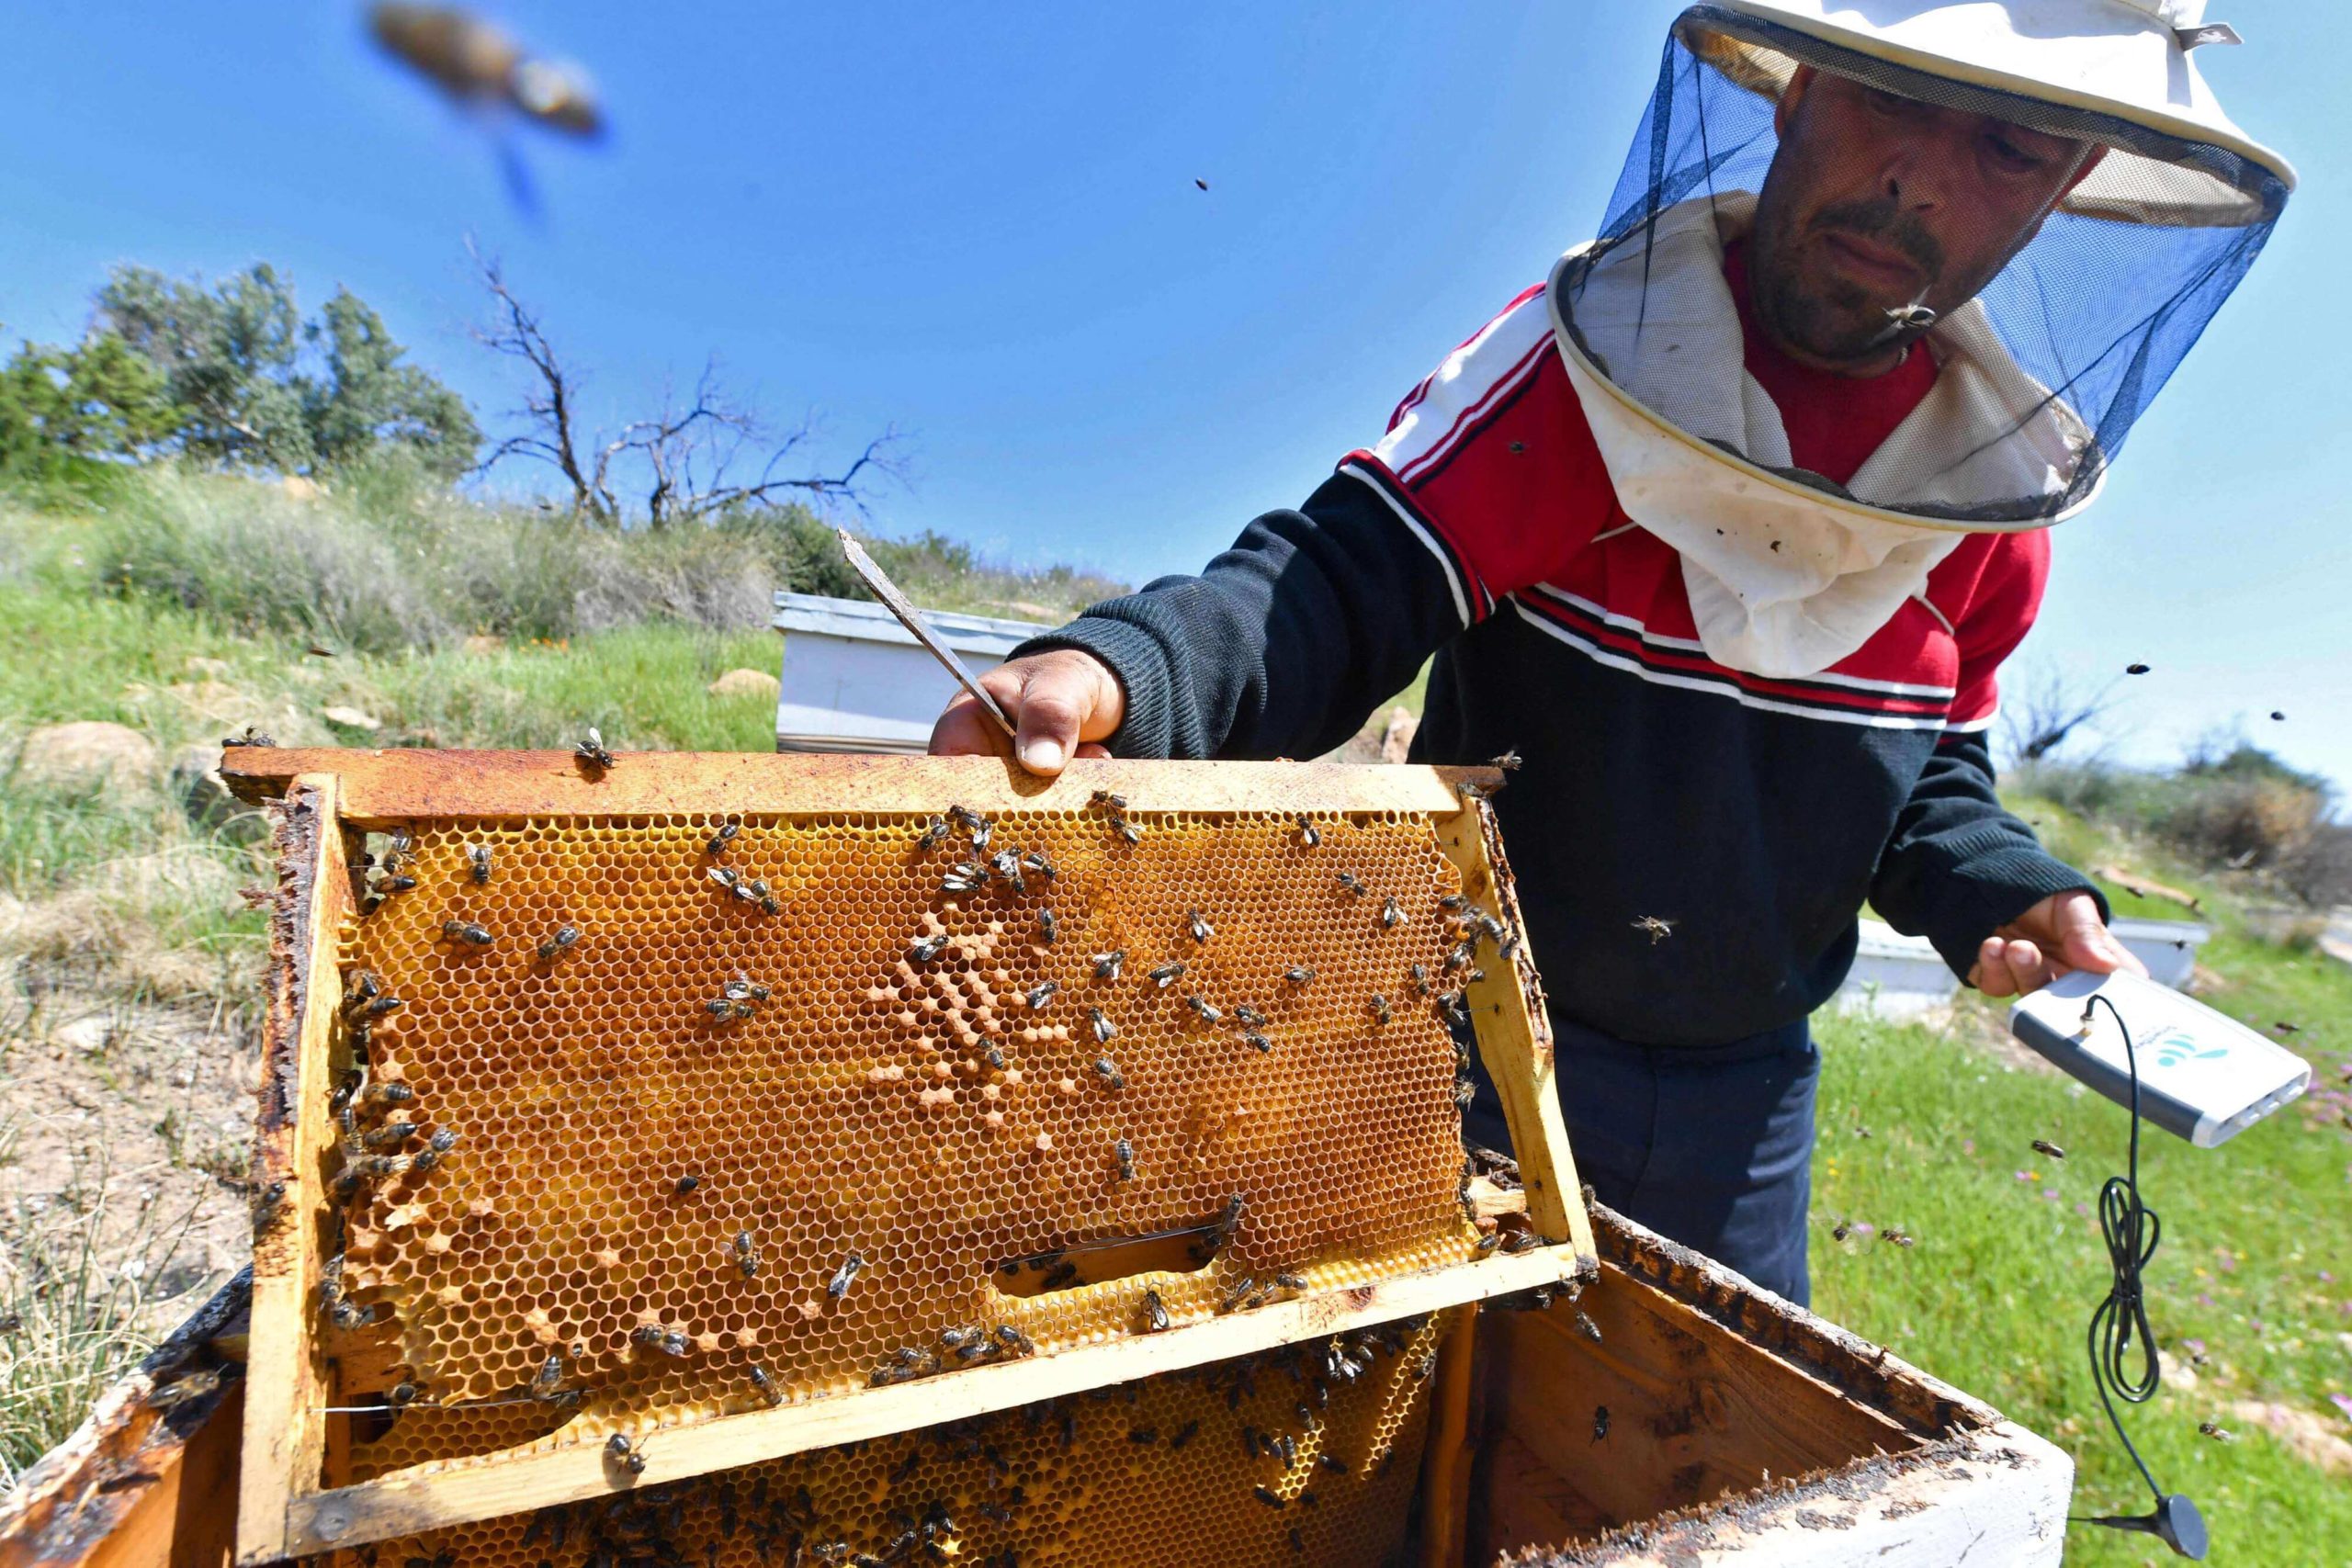 تطبيق يساعد على تفادي النفوق الزائد للنحل وتحسين إنتاج العسل في تونس